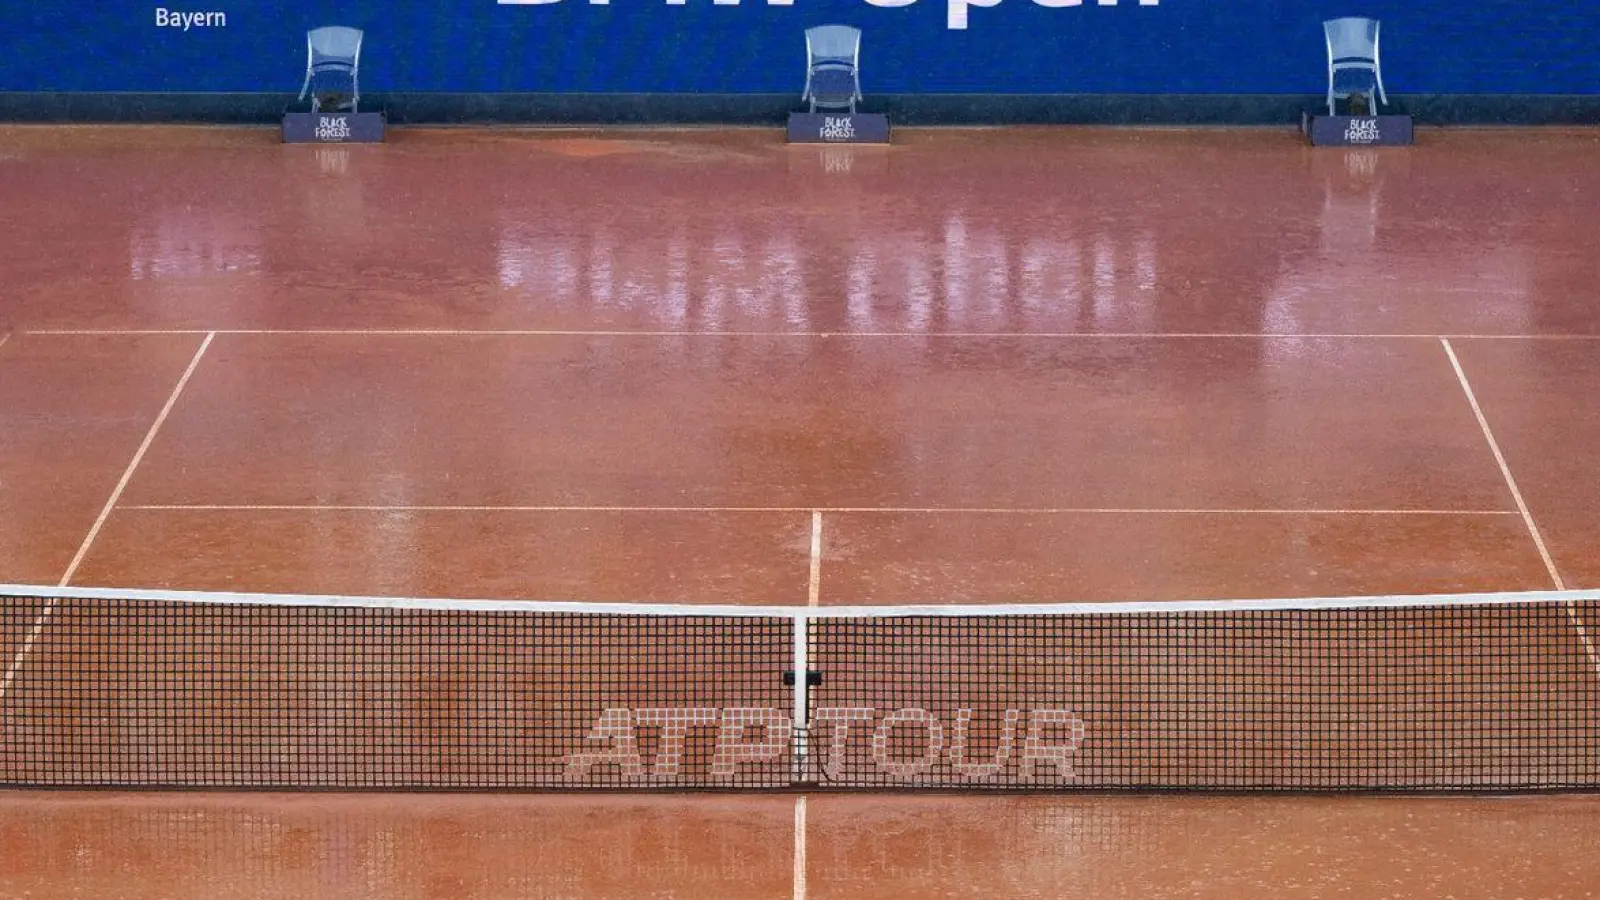 Das Turnier in München hat erst nach einer längeren Regenpause begonnen. (Foto: Lukas Barth/dpa)